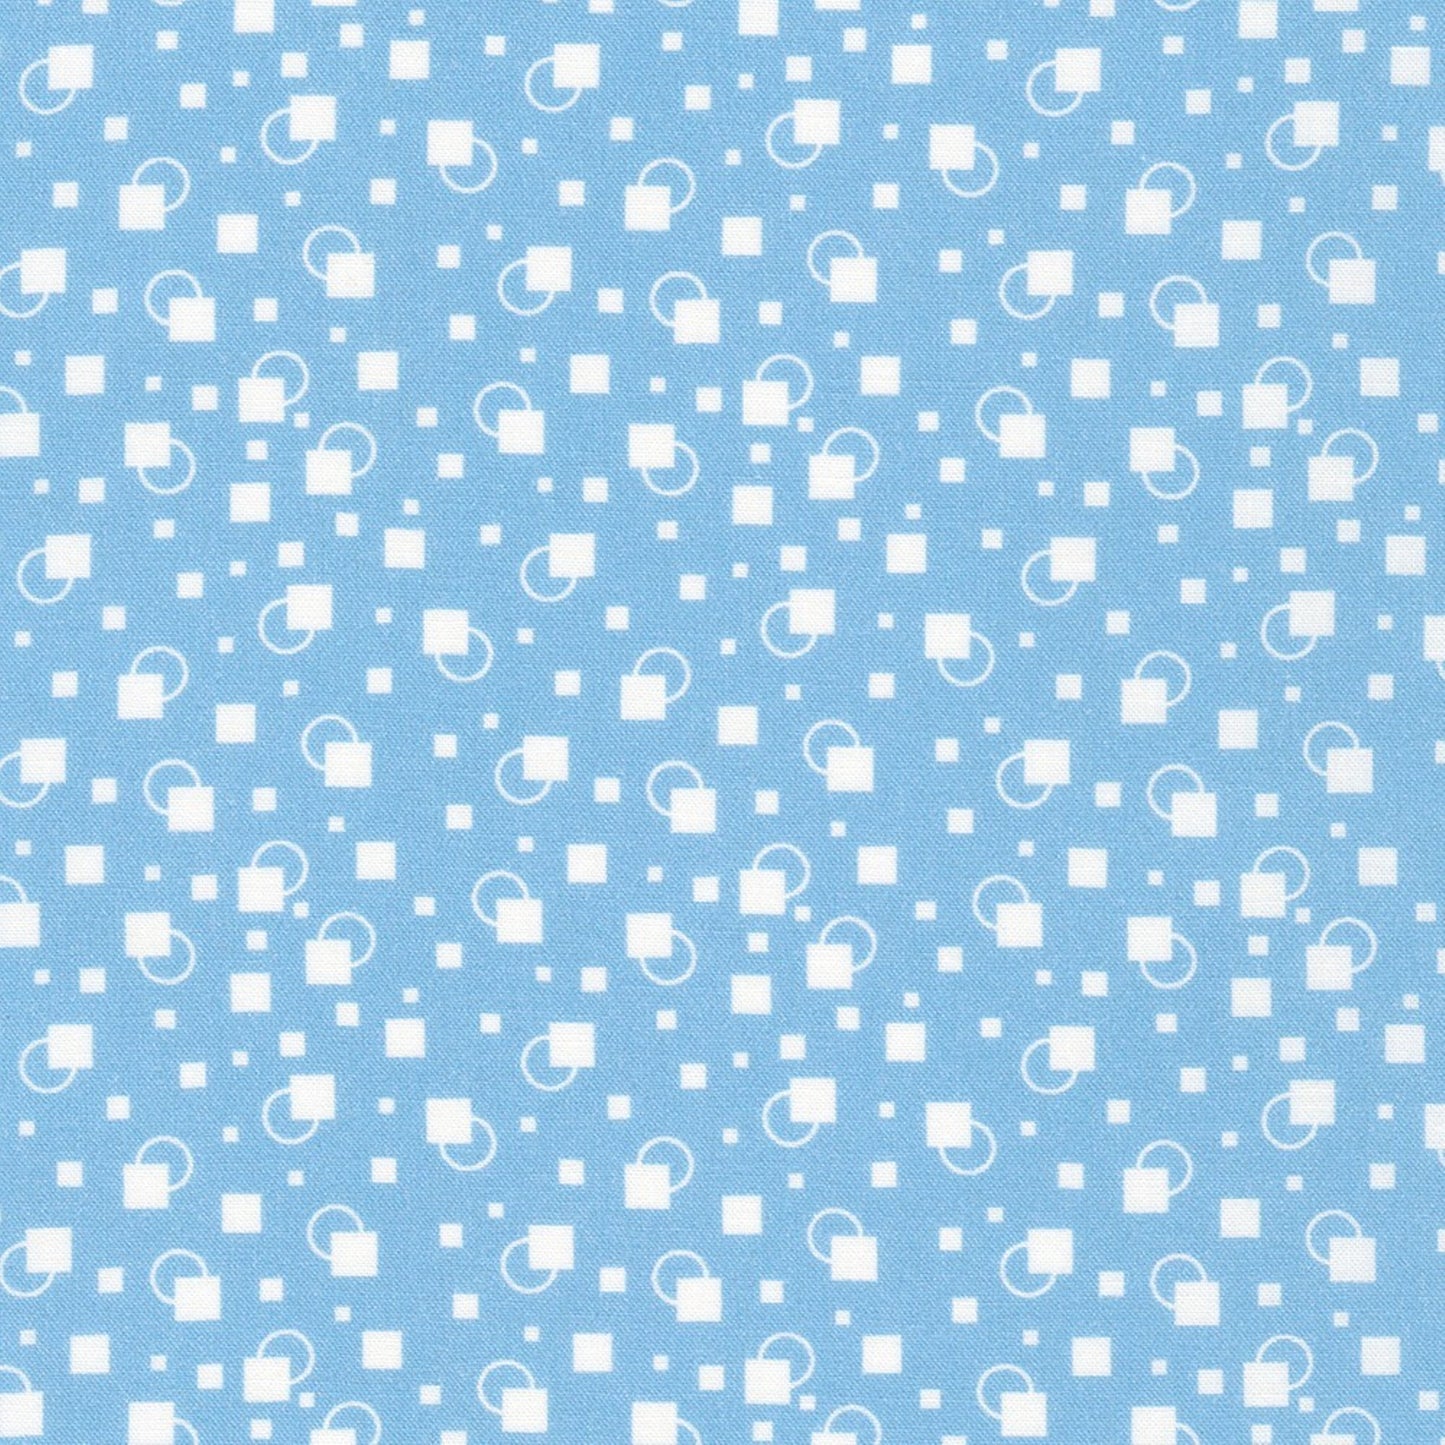 Little Blossoms geometric blue white 1930's style floral Kaufman cotton quilt fabric